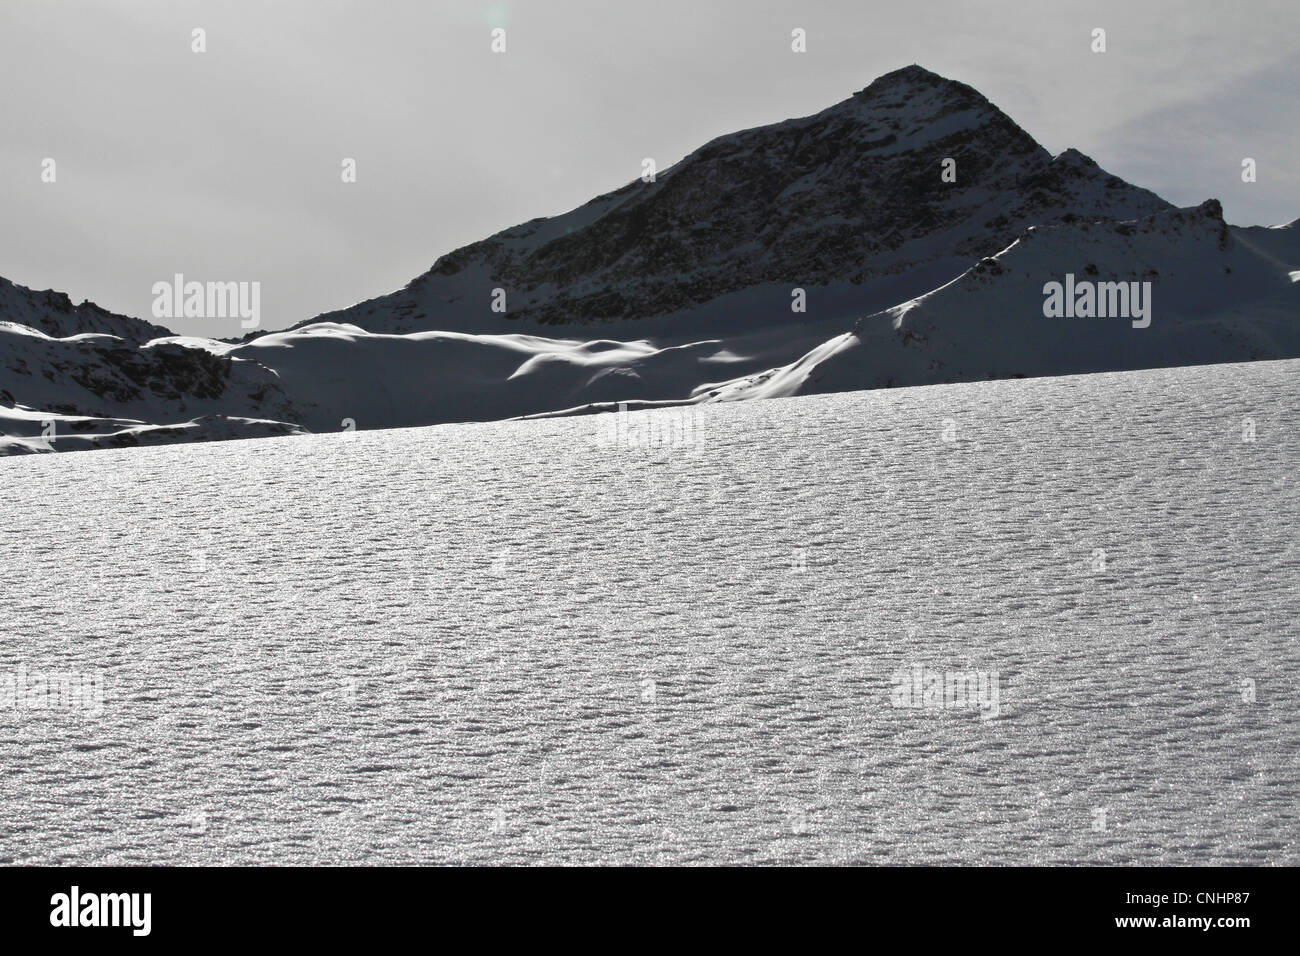 Couverture de neige et des montagnes rocheuses en arrière-plan Banque D'Images